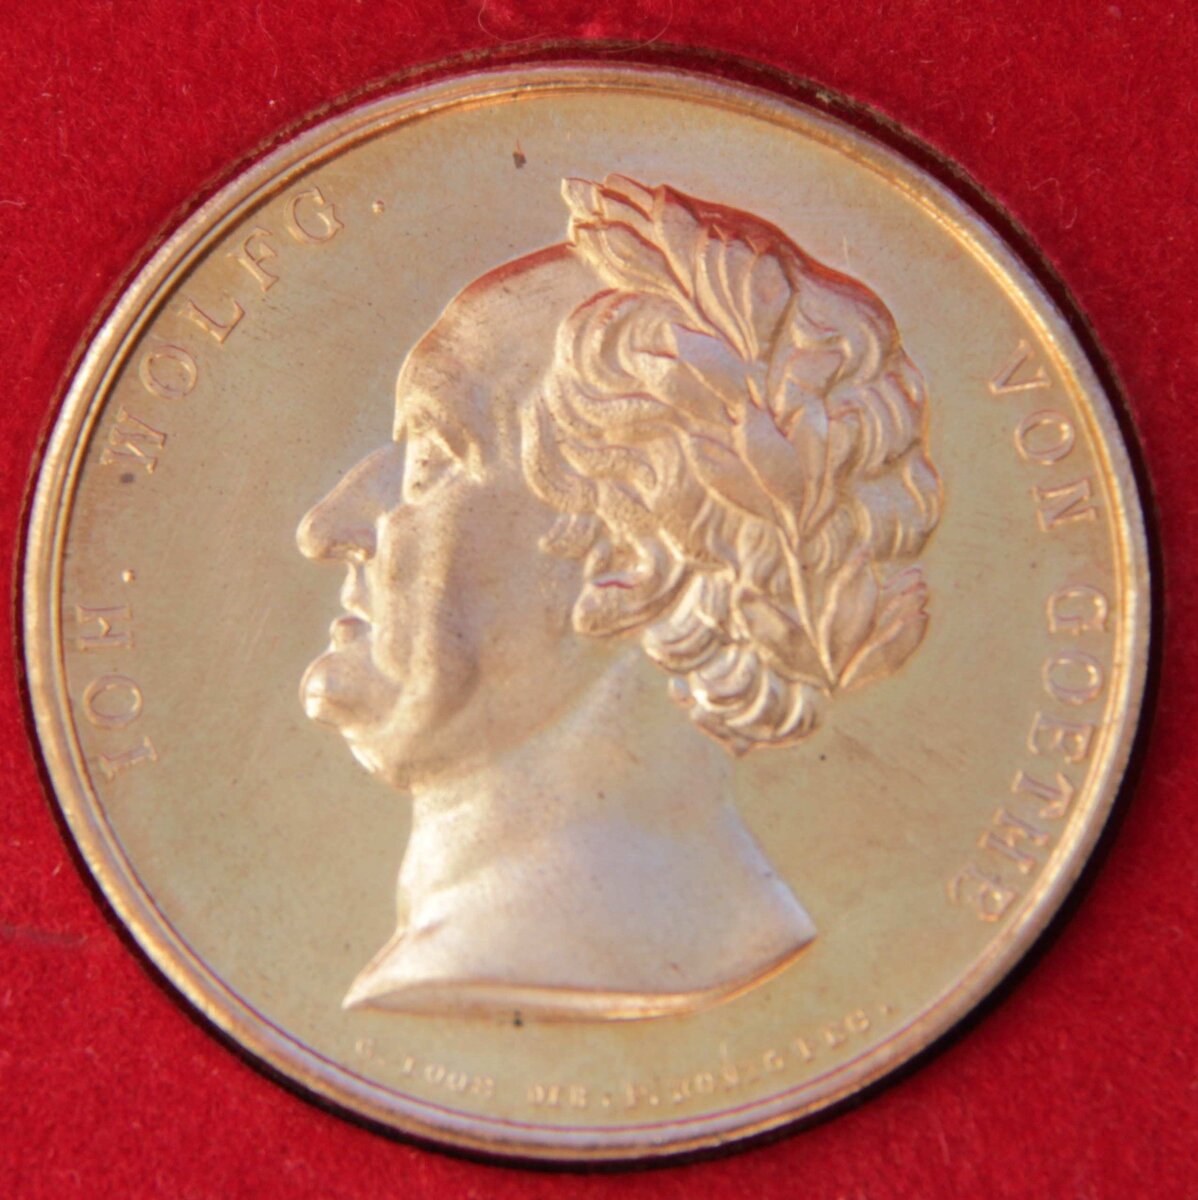 Medal get. Гёте и награды. Ордена Гете. 150 Лет со дня смерти Иоганна Вольфганга фон гёте монета.